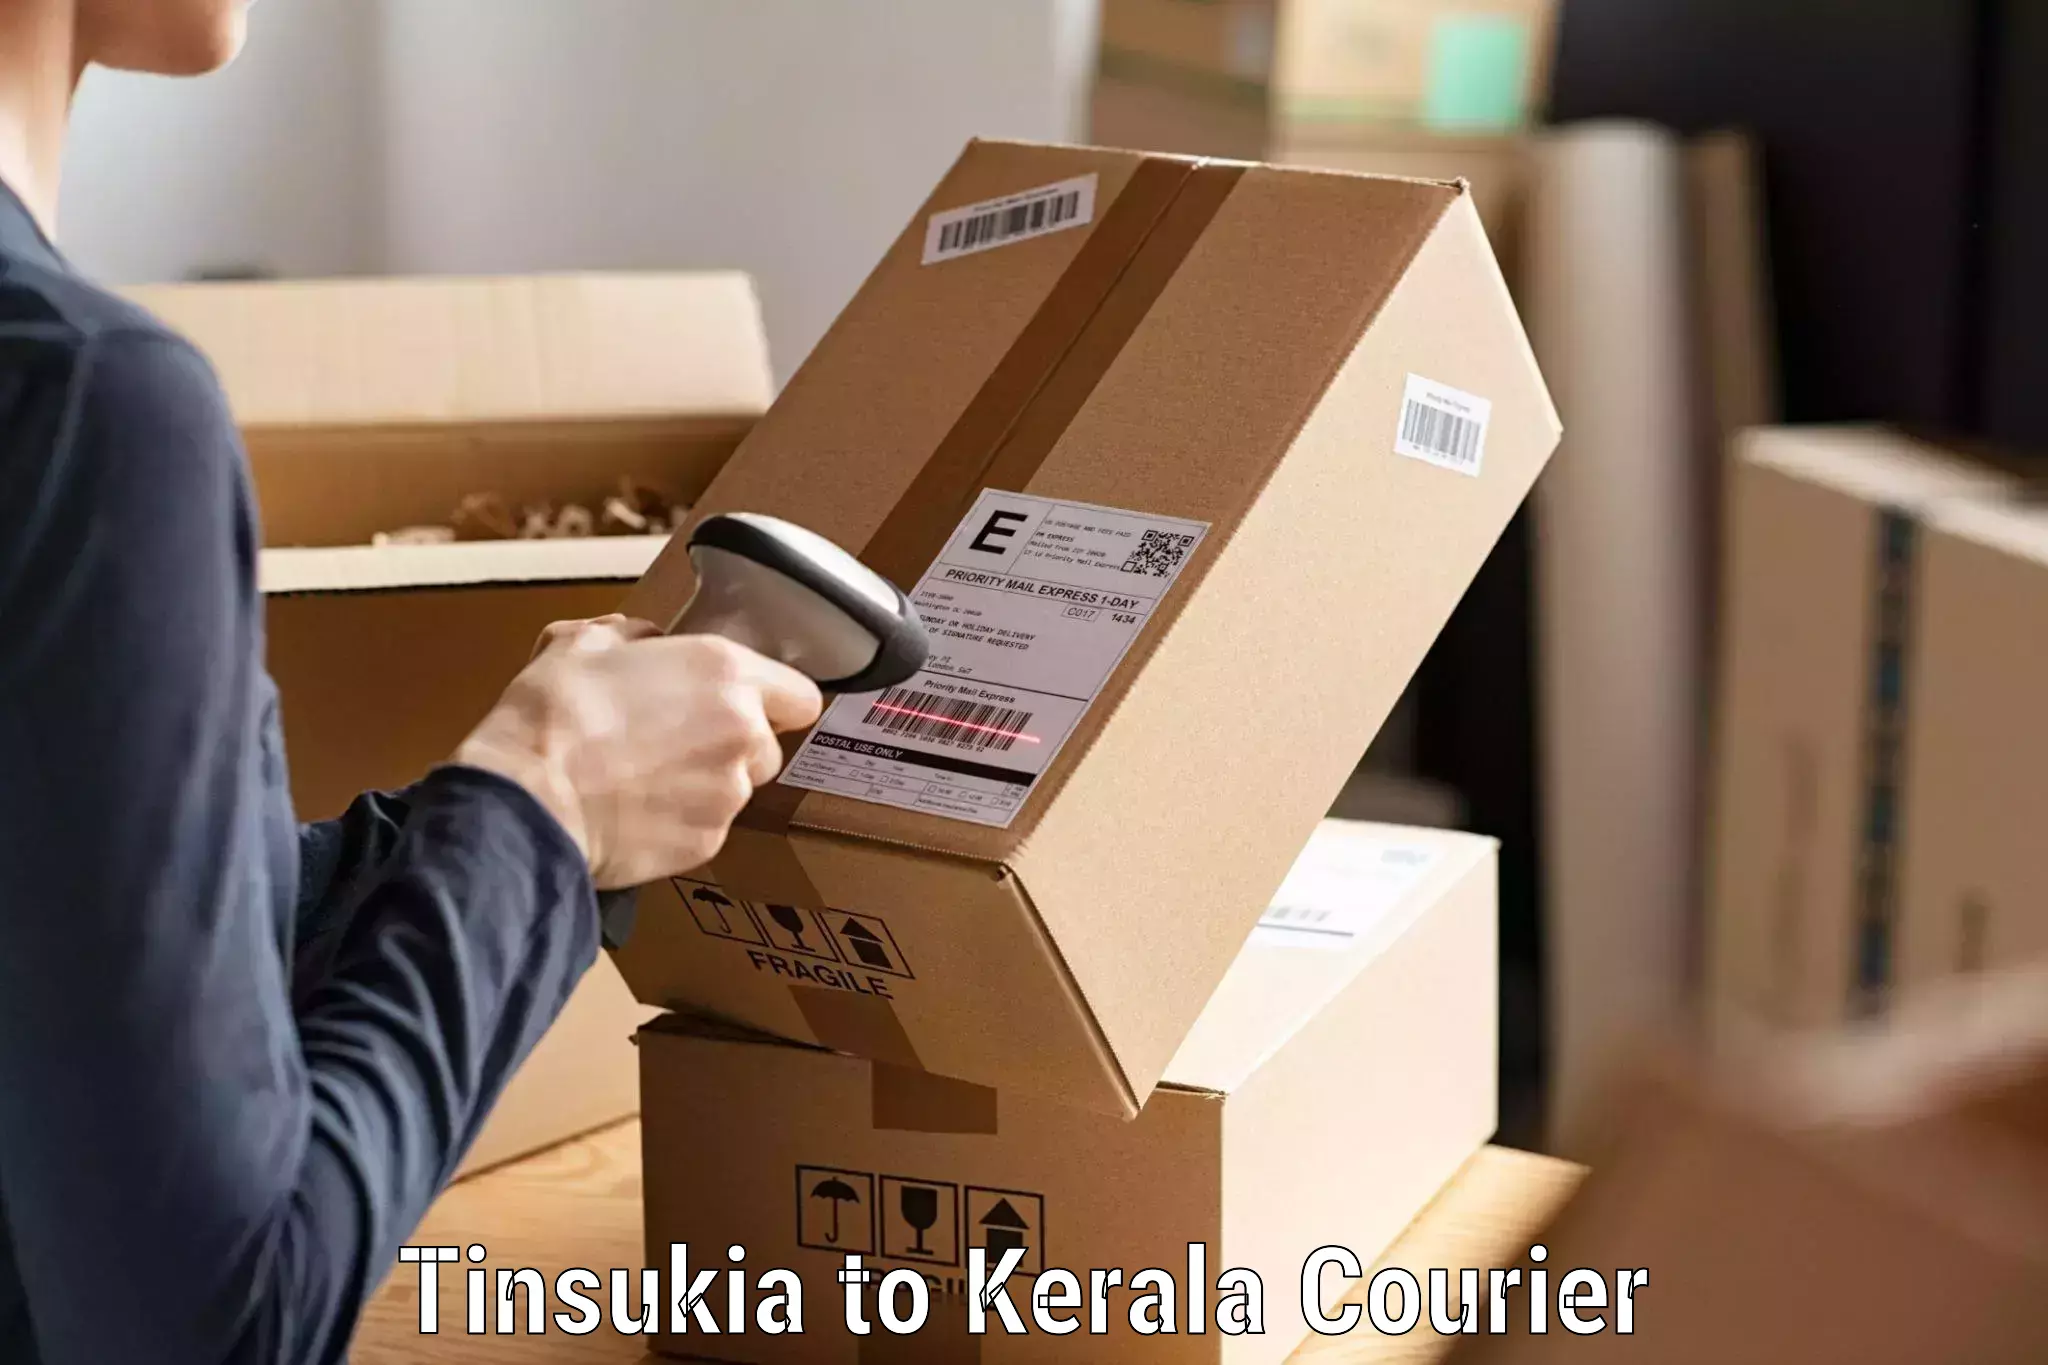 Next-generation courier services Tinsukia to Kakkur